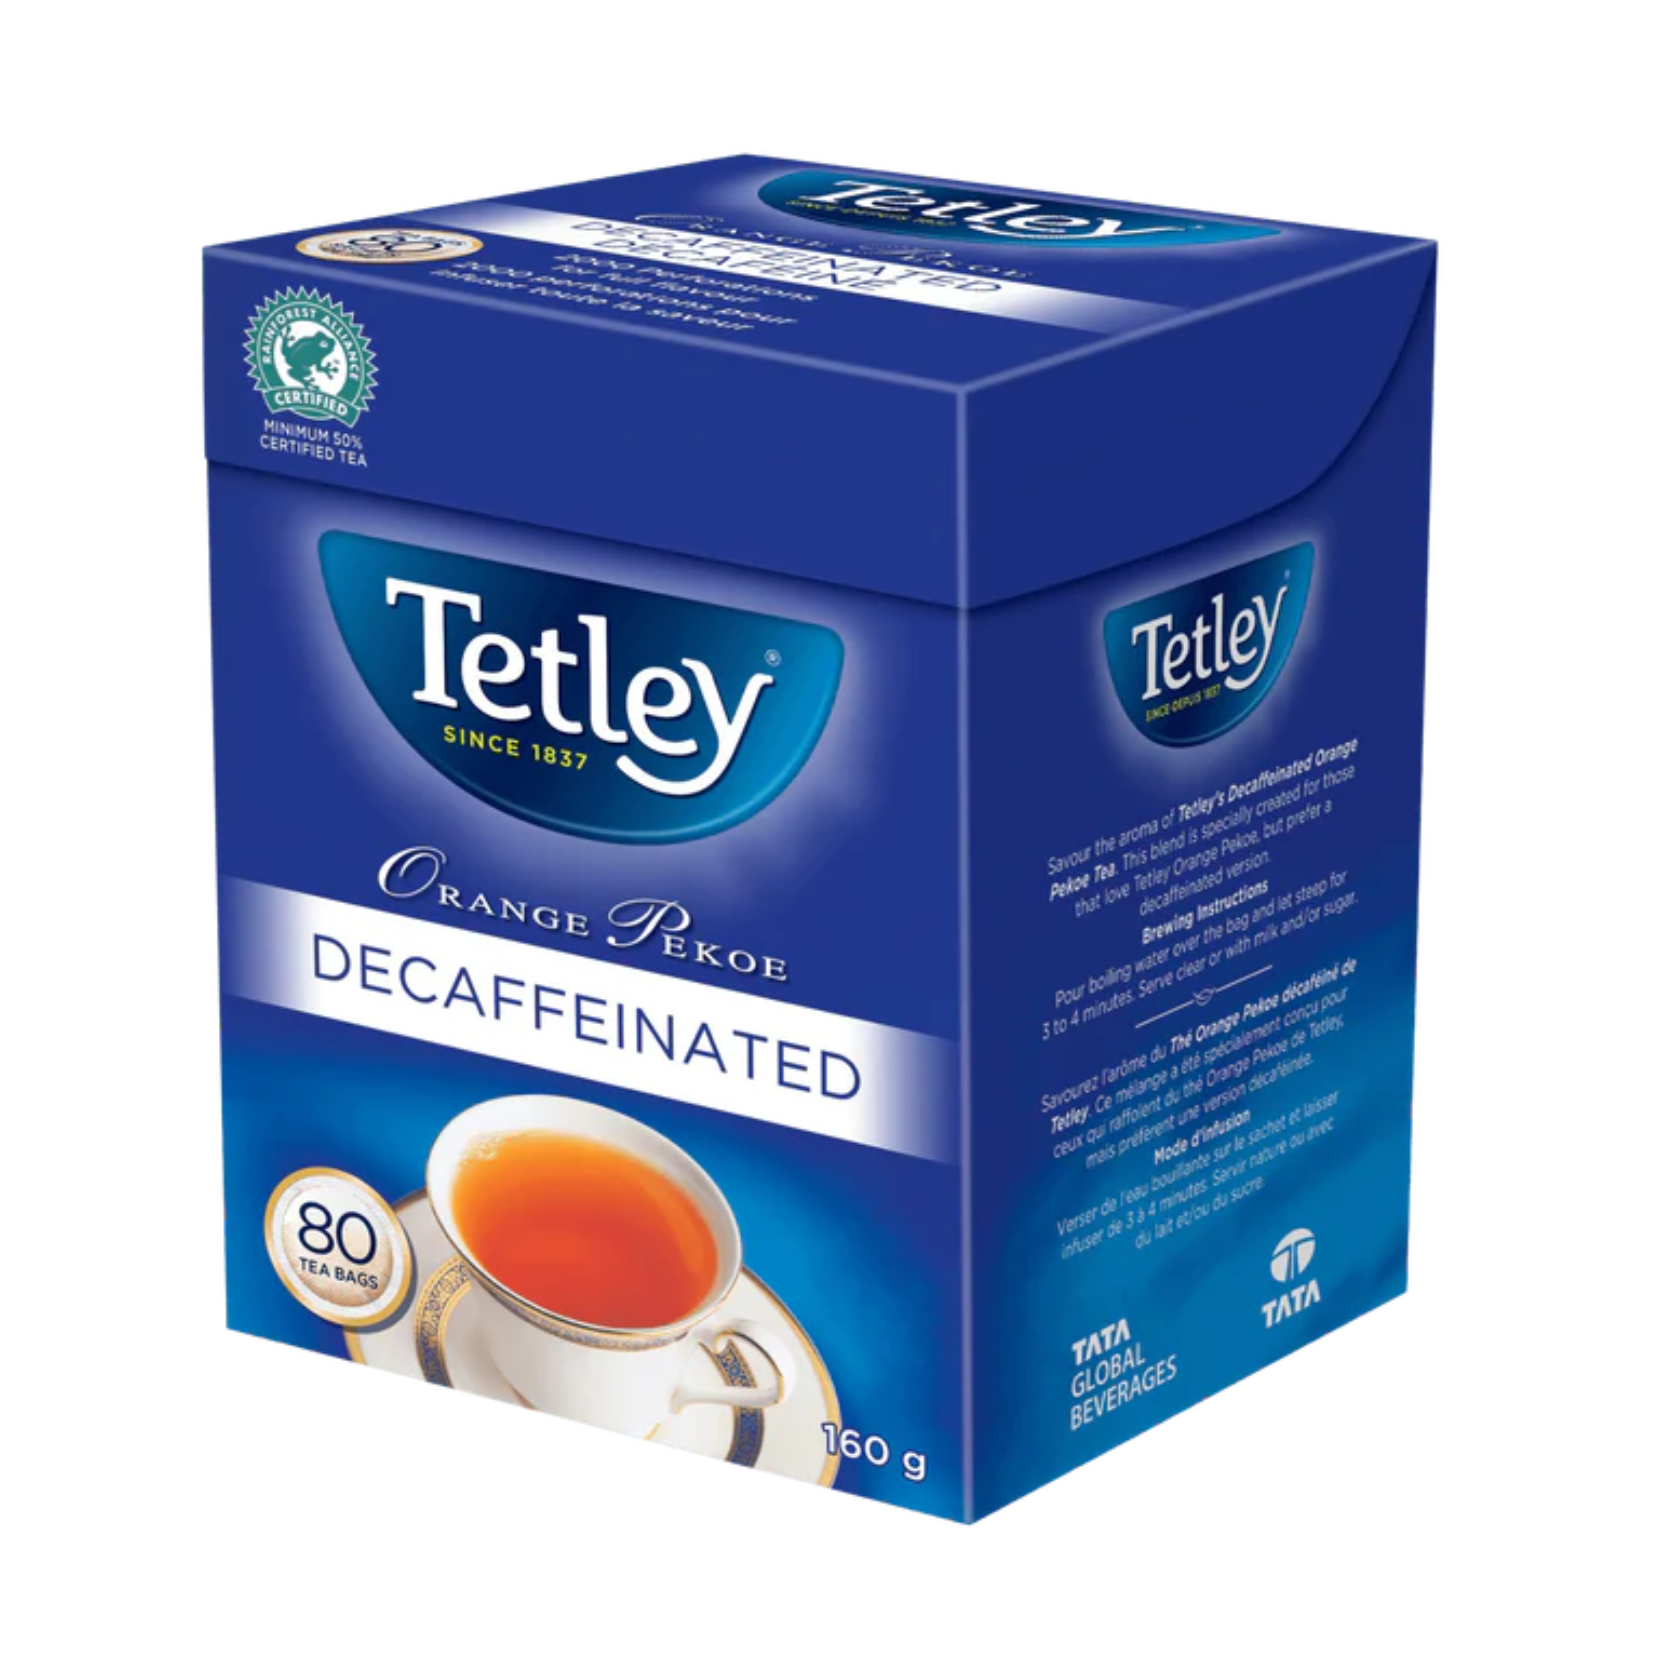 Tetley Orange Pekoe Decaffeinated Tea 80ct